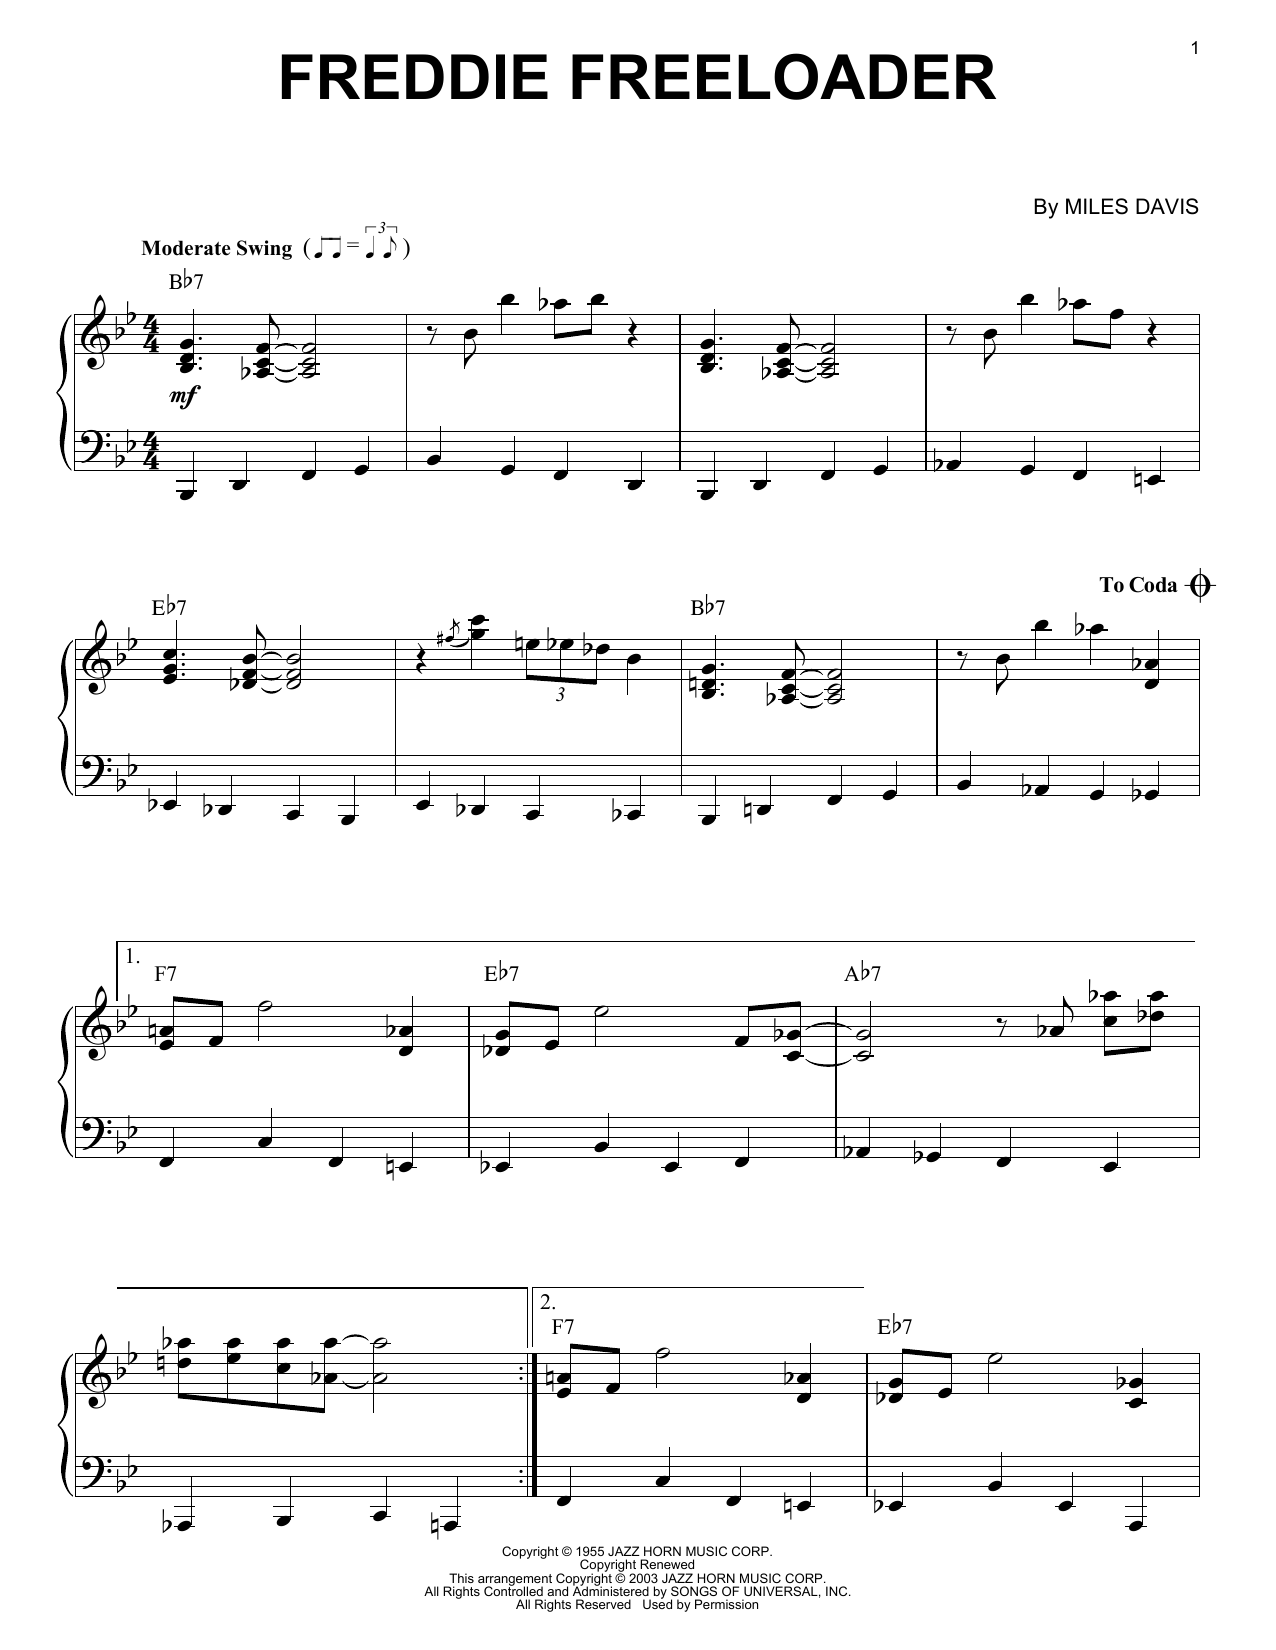 Miles Davis Freddie Freeloader Sheet Music Notes & Chords for Trumpet Transcription - Download or Print PDF